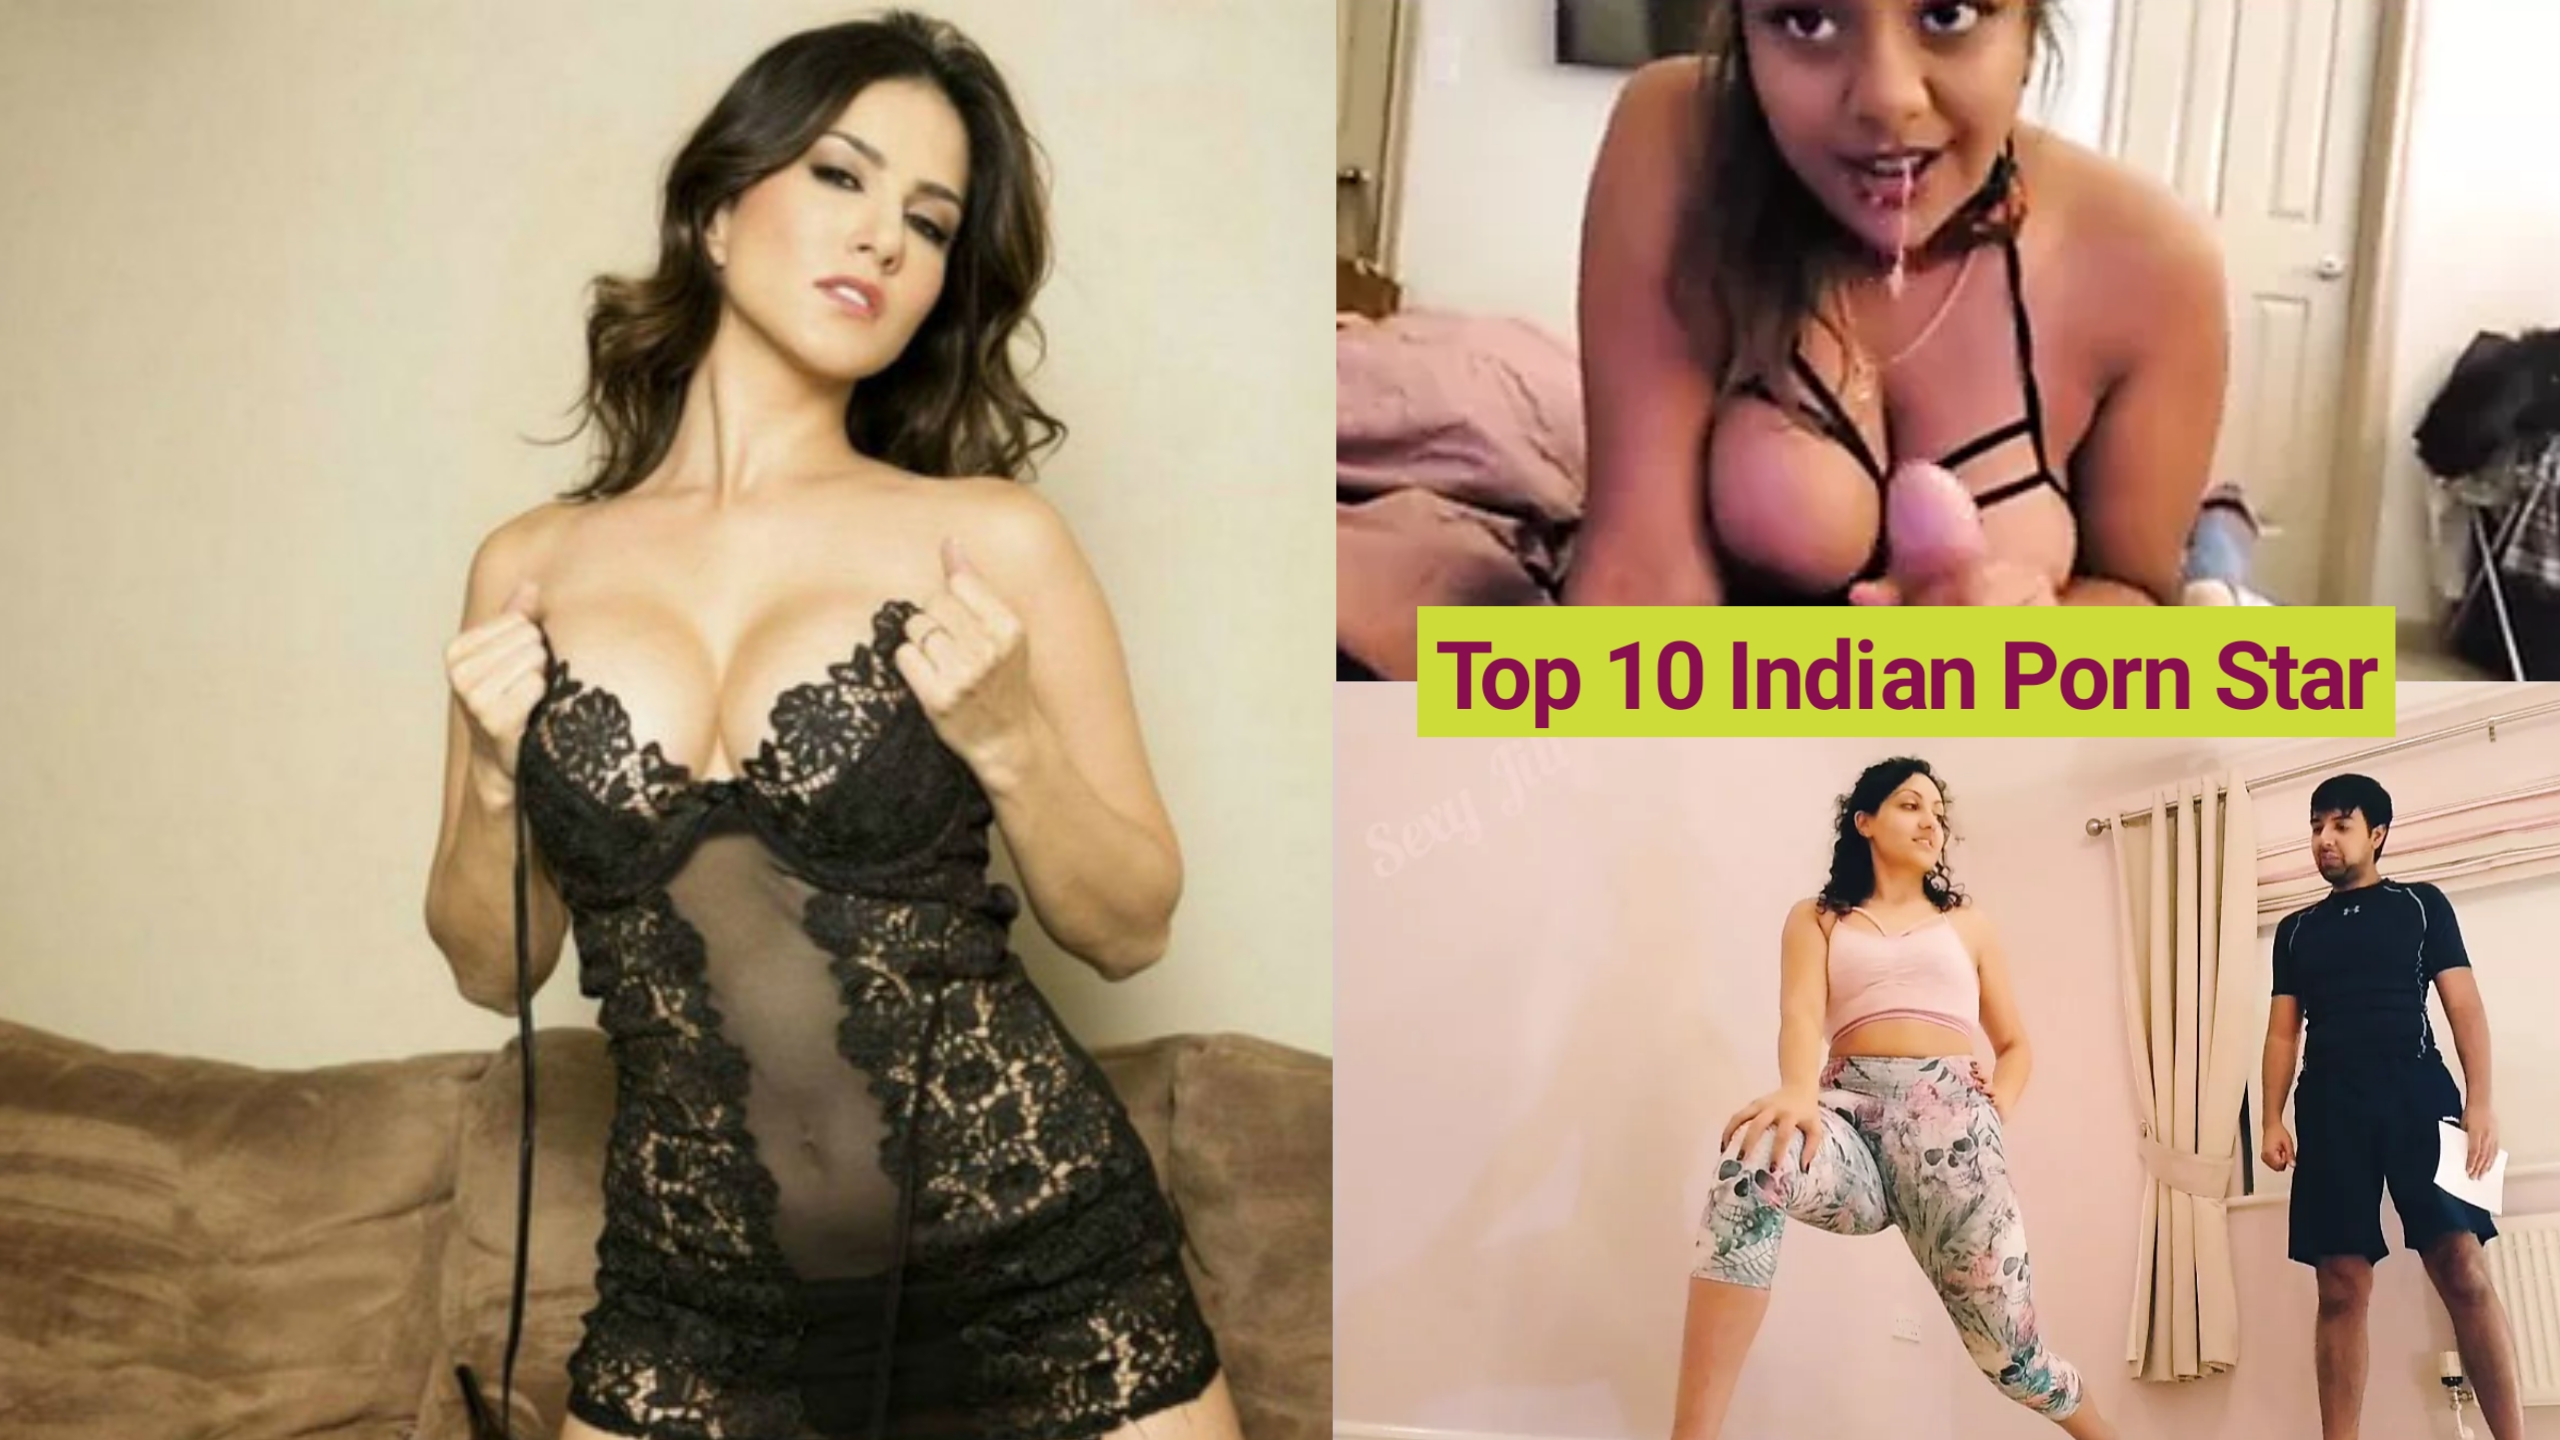 Top 10 Indian Porn Stars - Top 10 Indian Porn Star | top 10 indian porn star name | top 10 indian porn  star list